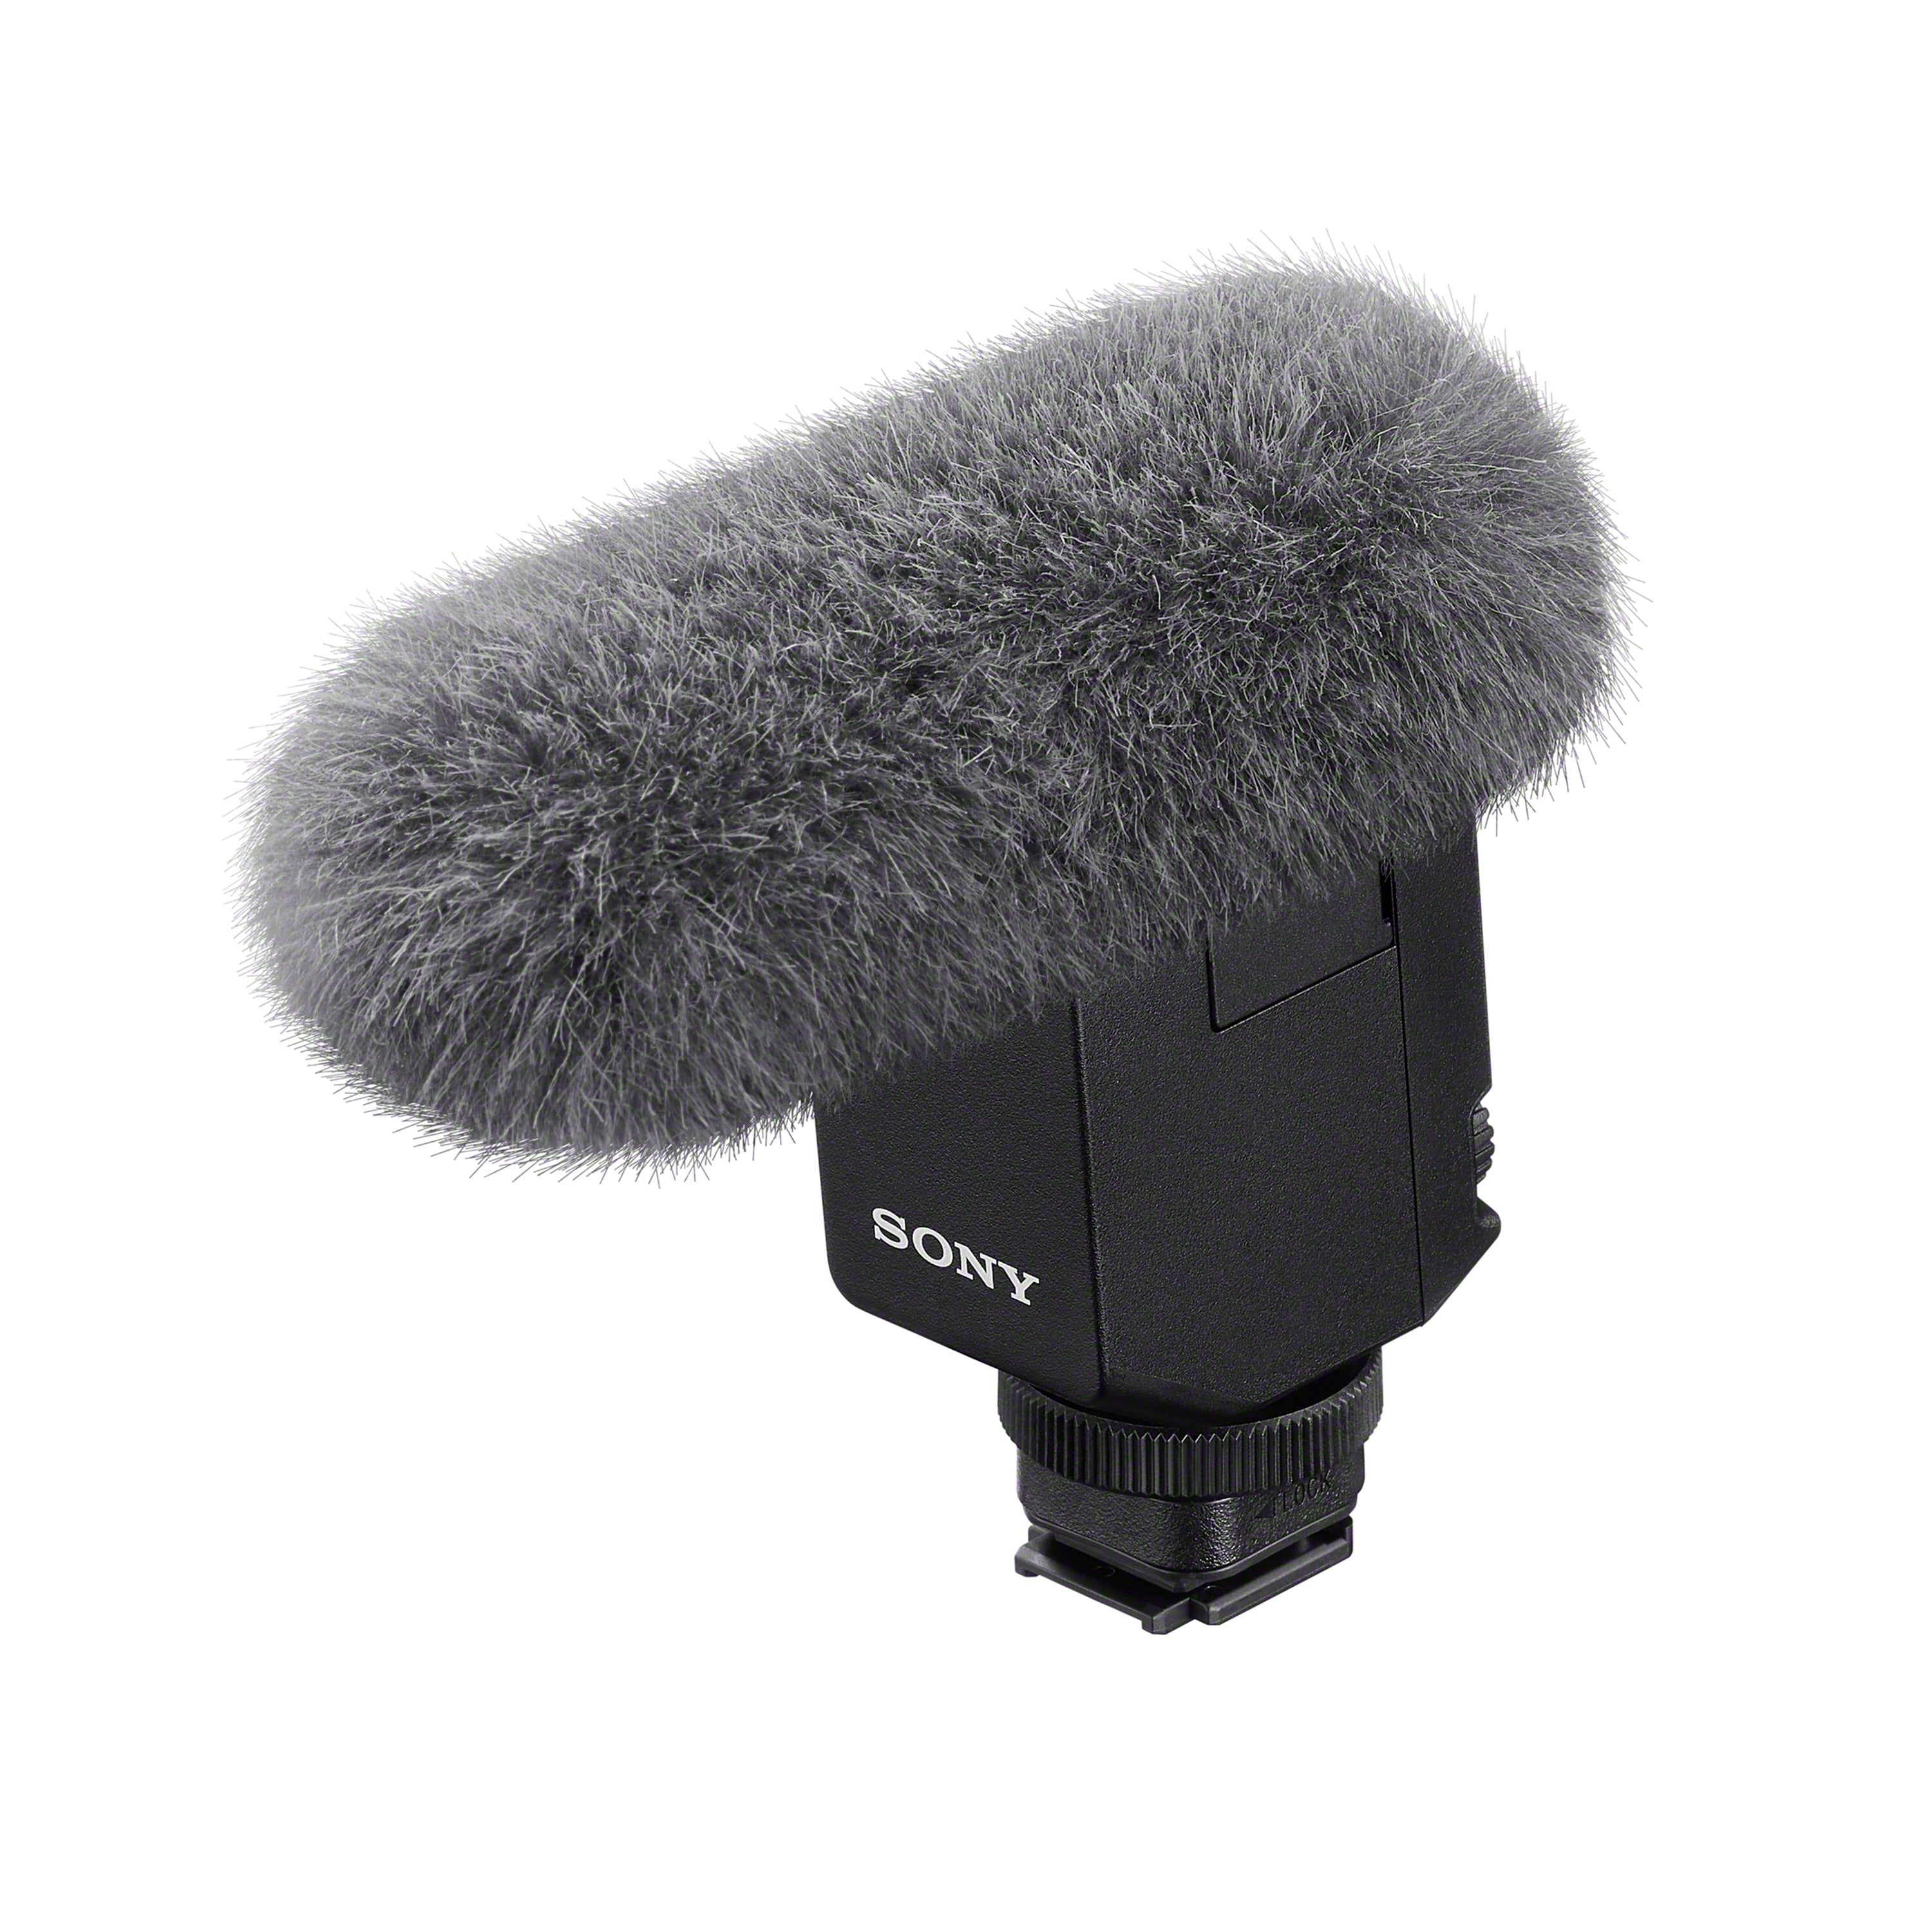 Sony ECM-B10 Digital Shotgun Microphone